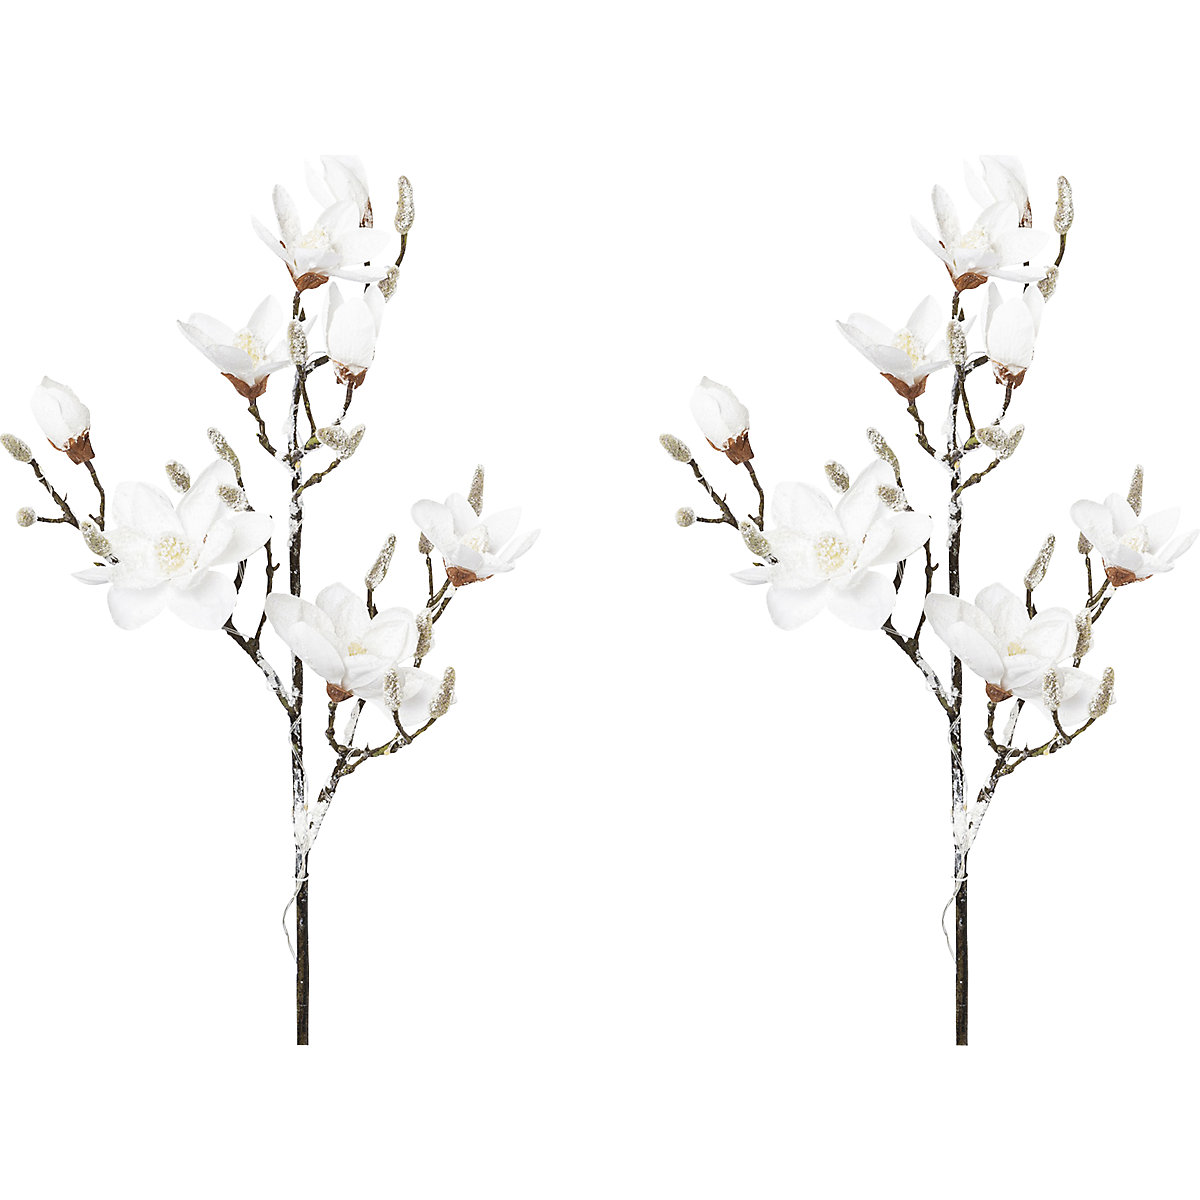 Magnolia nevada con 15 LED